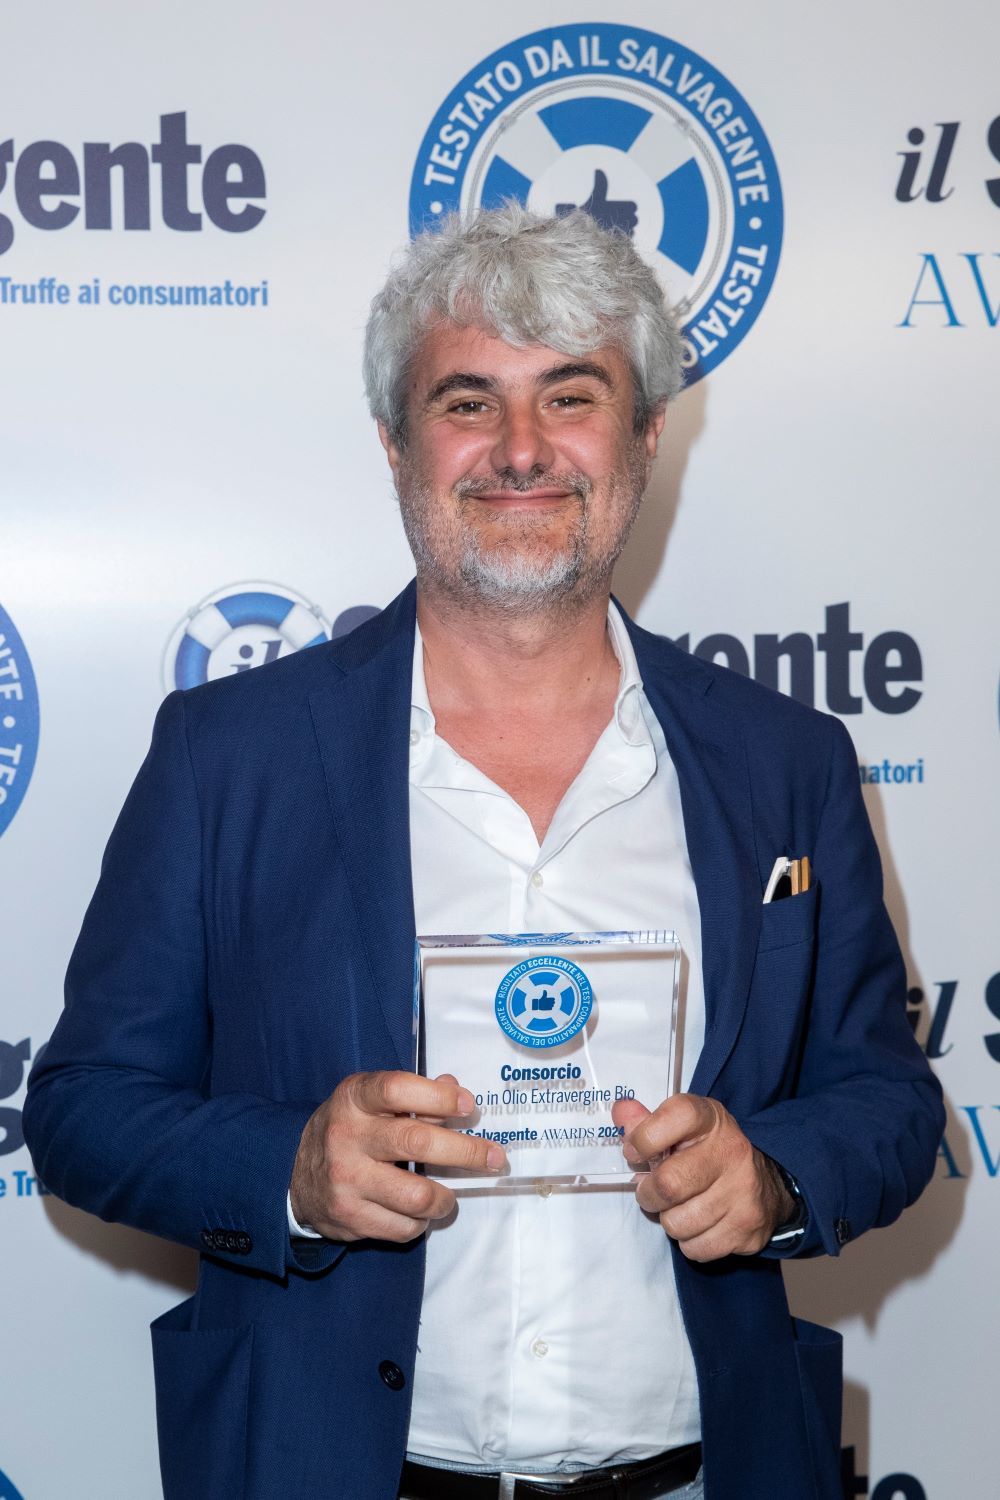 ​Grupo Consorcio premiata a Il Salvagente Awards 2024 